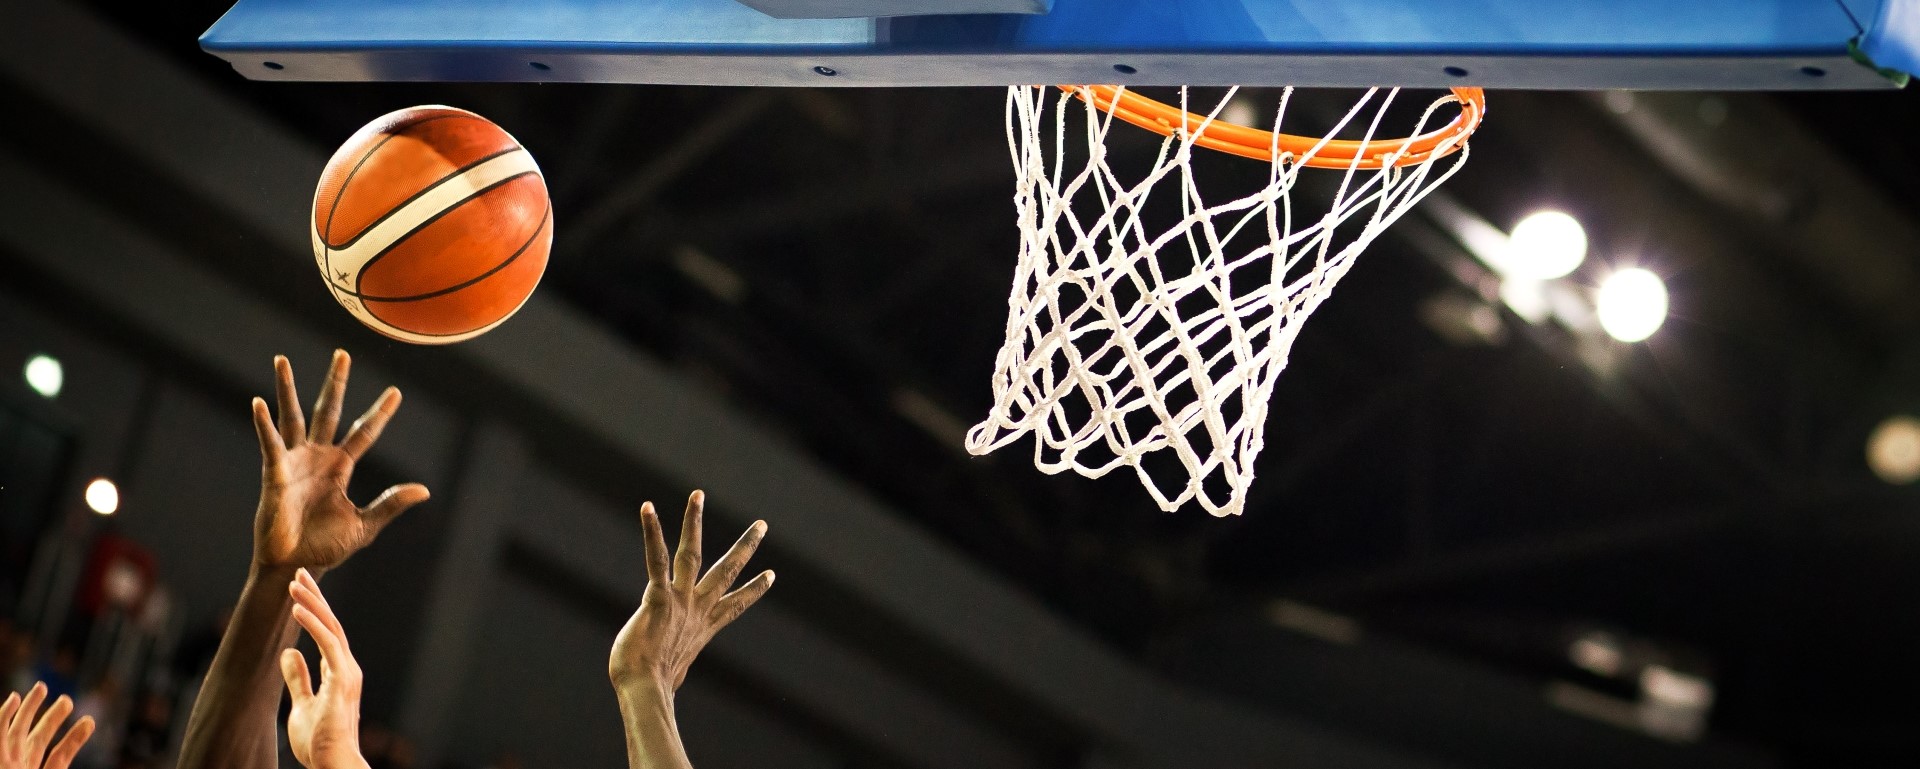 Jānis Timma kļūs par pirmo latvieti Puertoriko basketbola čempionātā